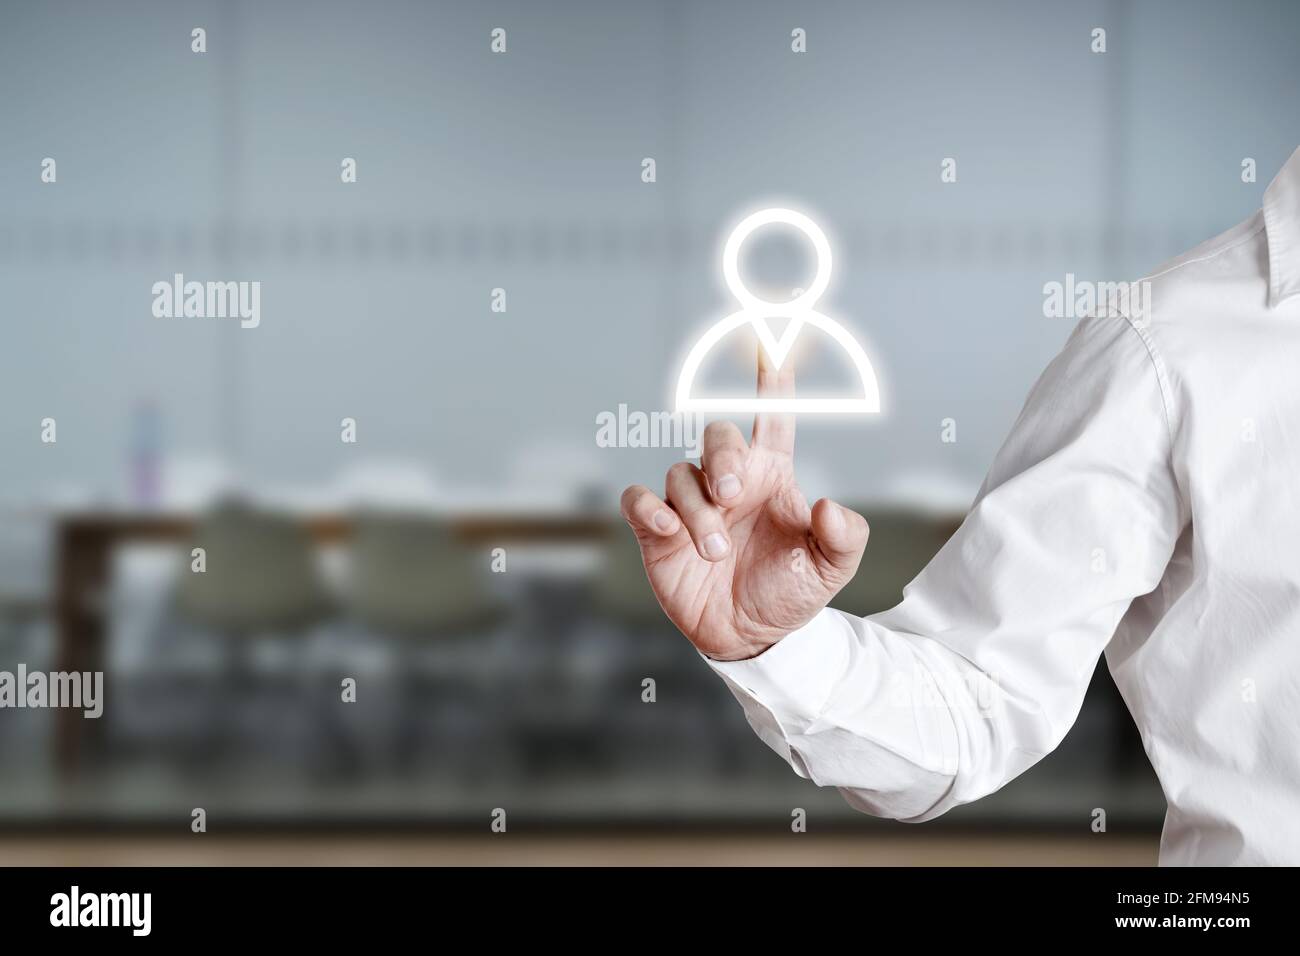 Drücken Sie das Mitarbeitersymbol auf einem virtuellen Bildschirm mit männlicher Hand. Konzept zur Teambildung oder Rekrutierung. Stockfoto